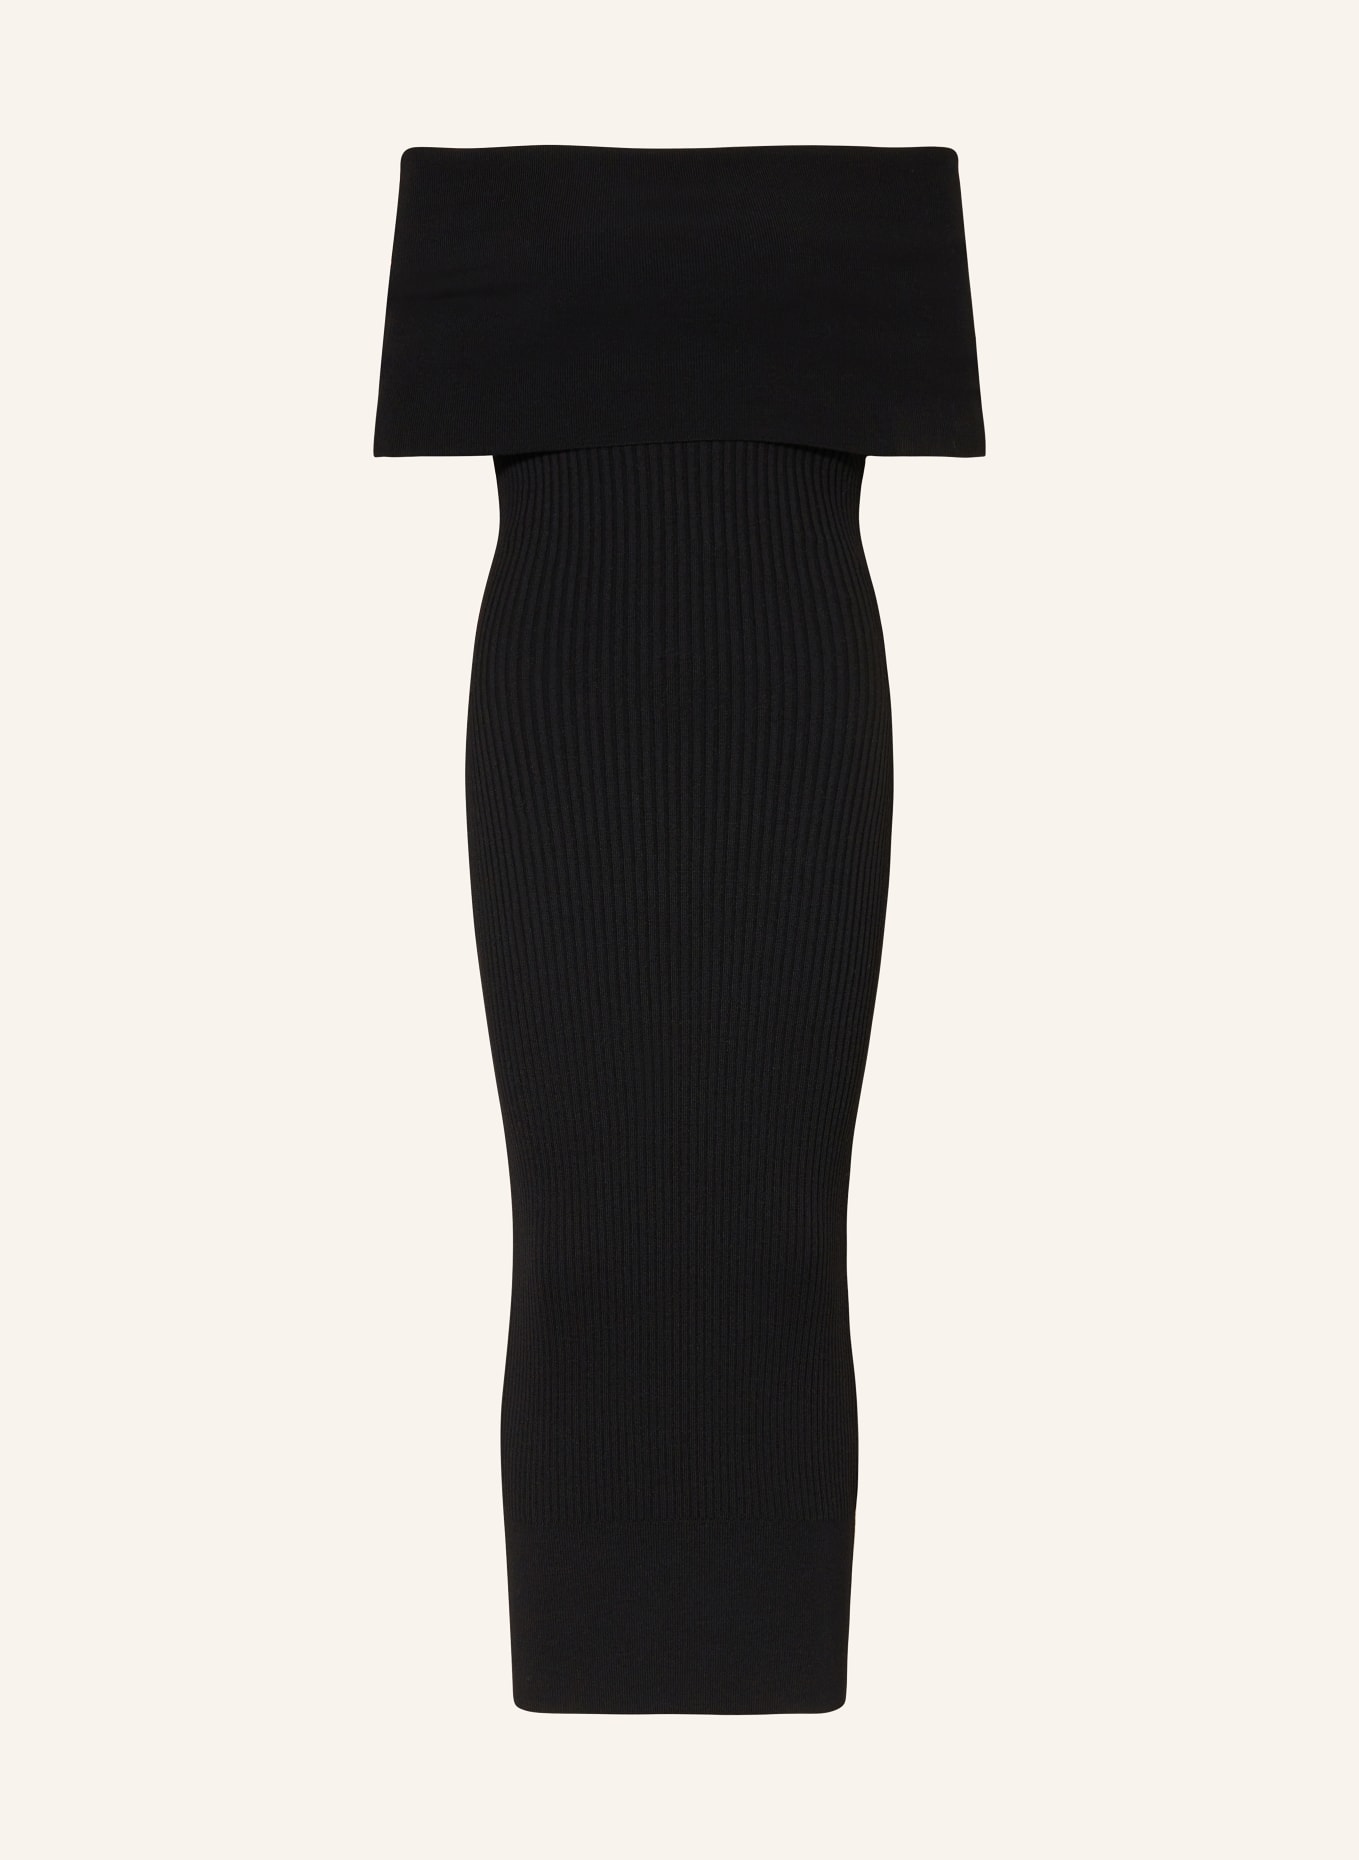 Alexander McQUEEN Off-shoulder knit dress, Color: BLACK (Image 1)